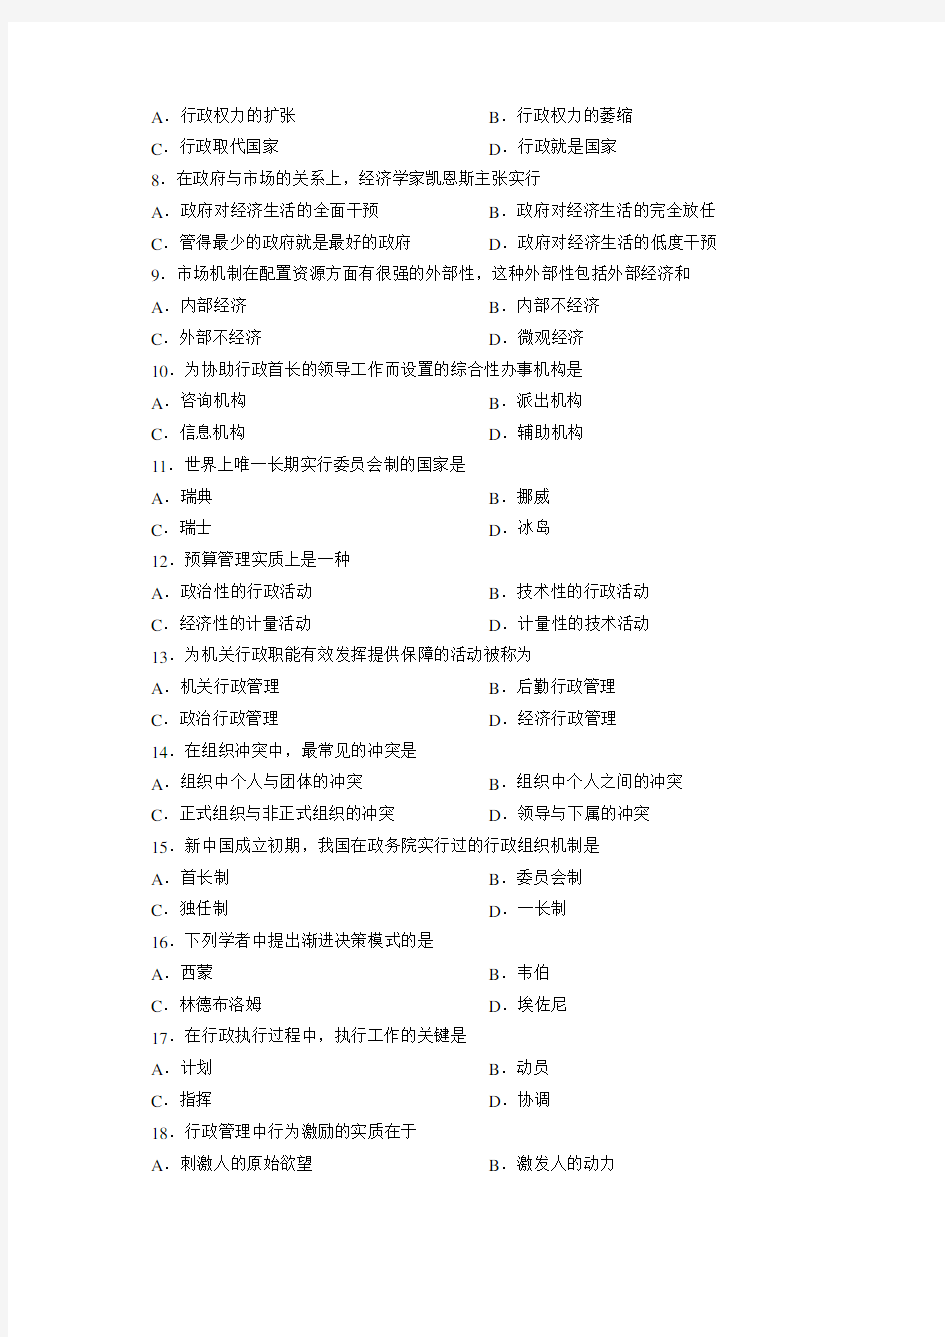 00277行政管理学真题(2013.7)